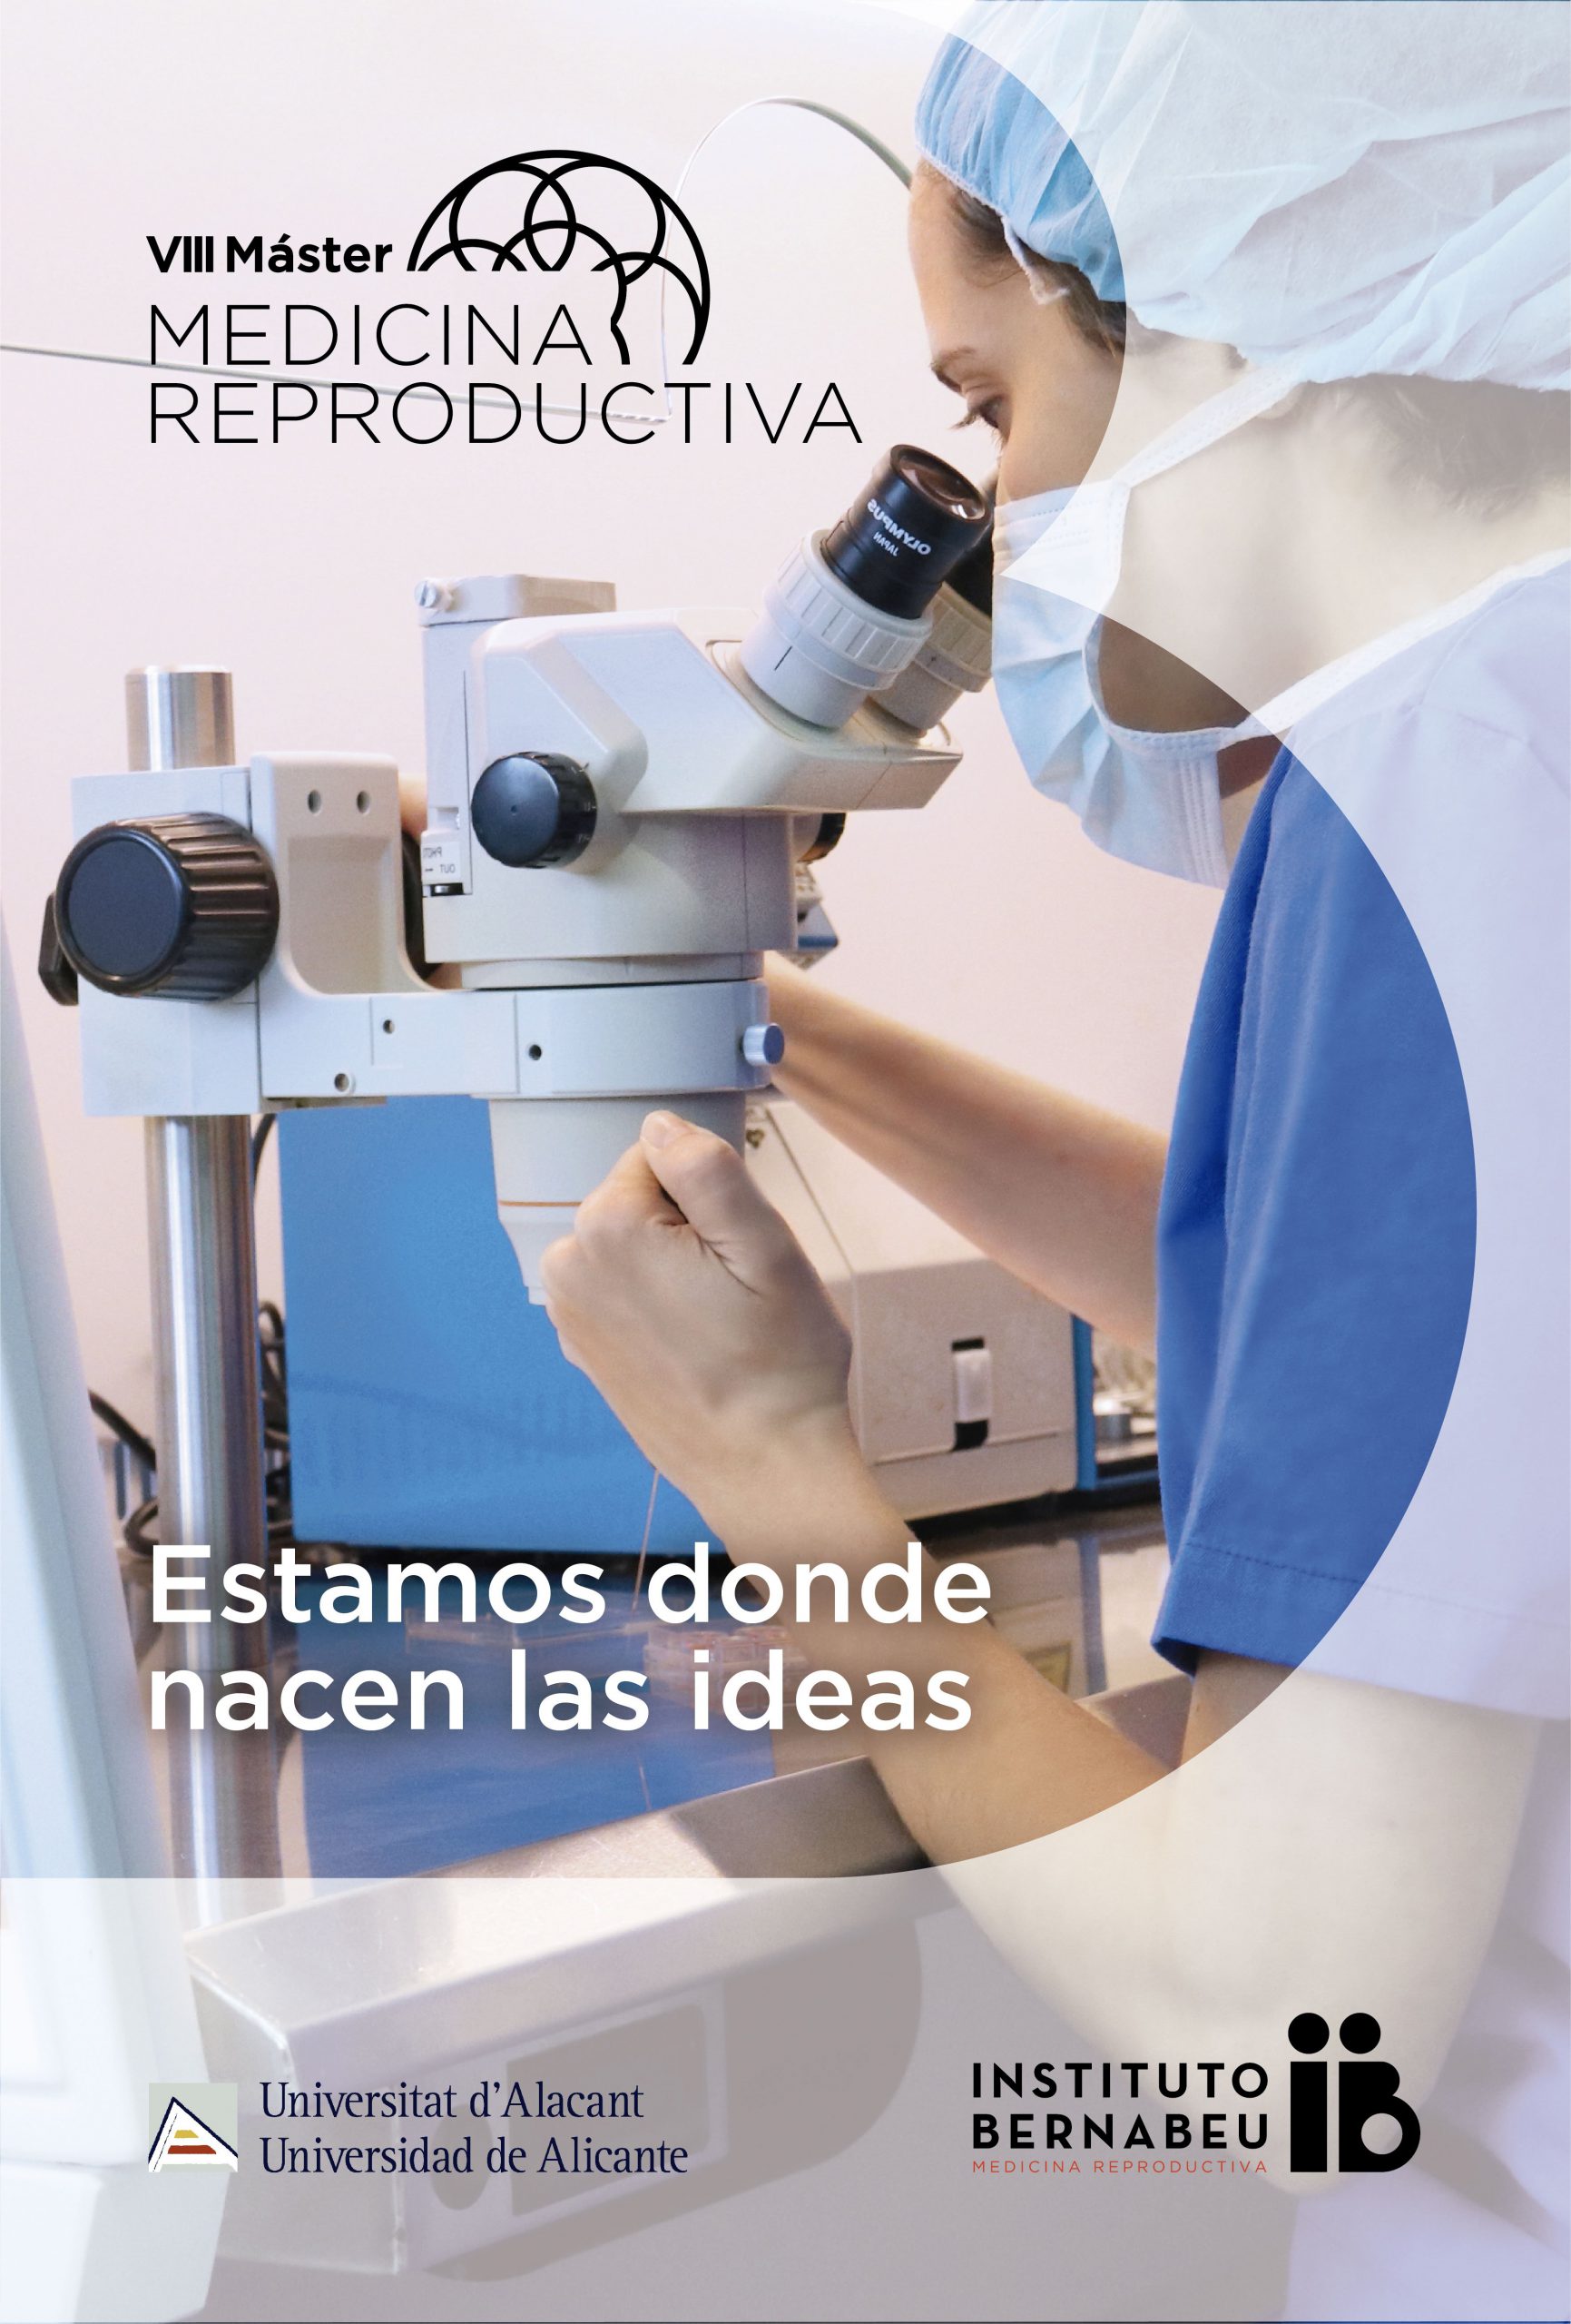 VIII Máster en Medicina Reproductiva Universidad de Alicante – Instituto Bernabeu